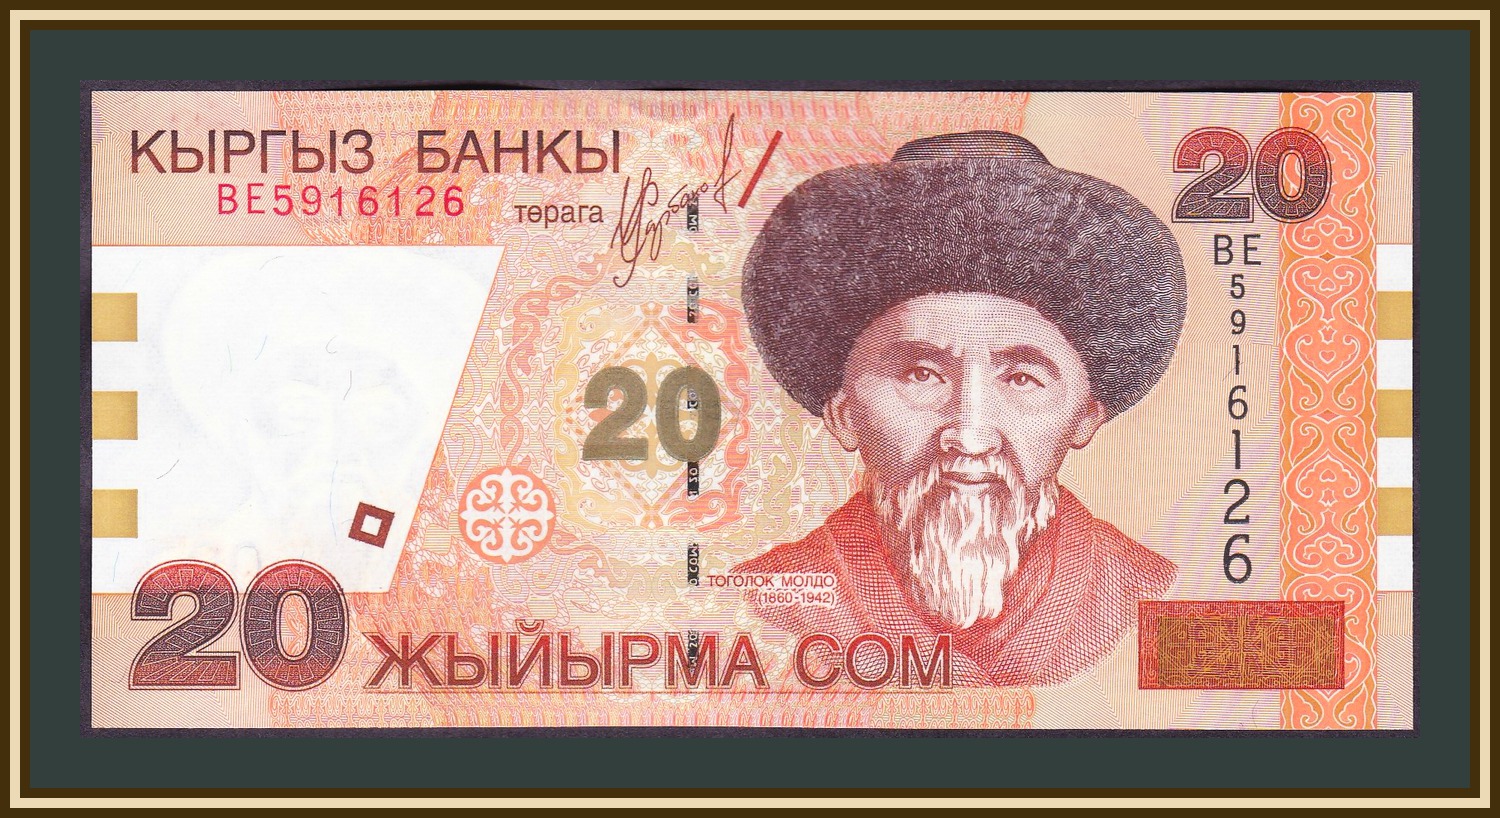 7800 сом в рублях. 20 Сом Киргизия. Киргизия 20 сом 2002. 20 Сом купюра. 20 Киргизских сомов.